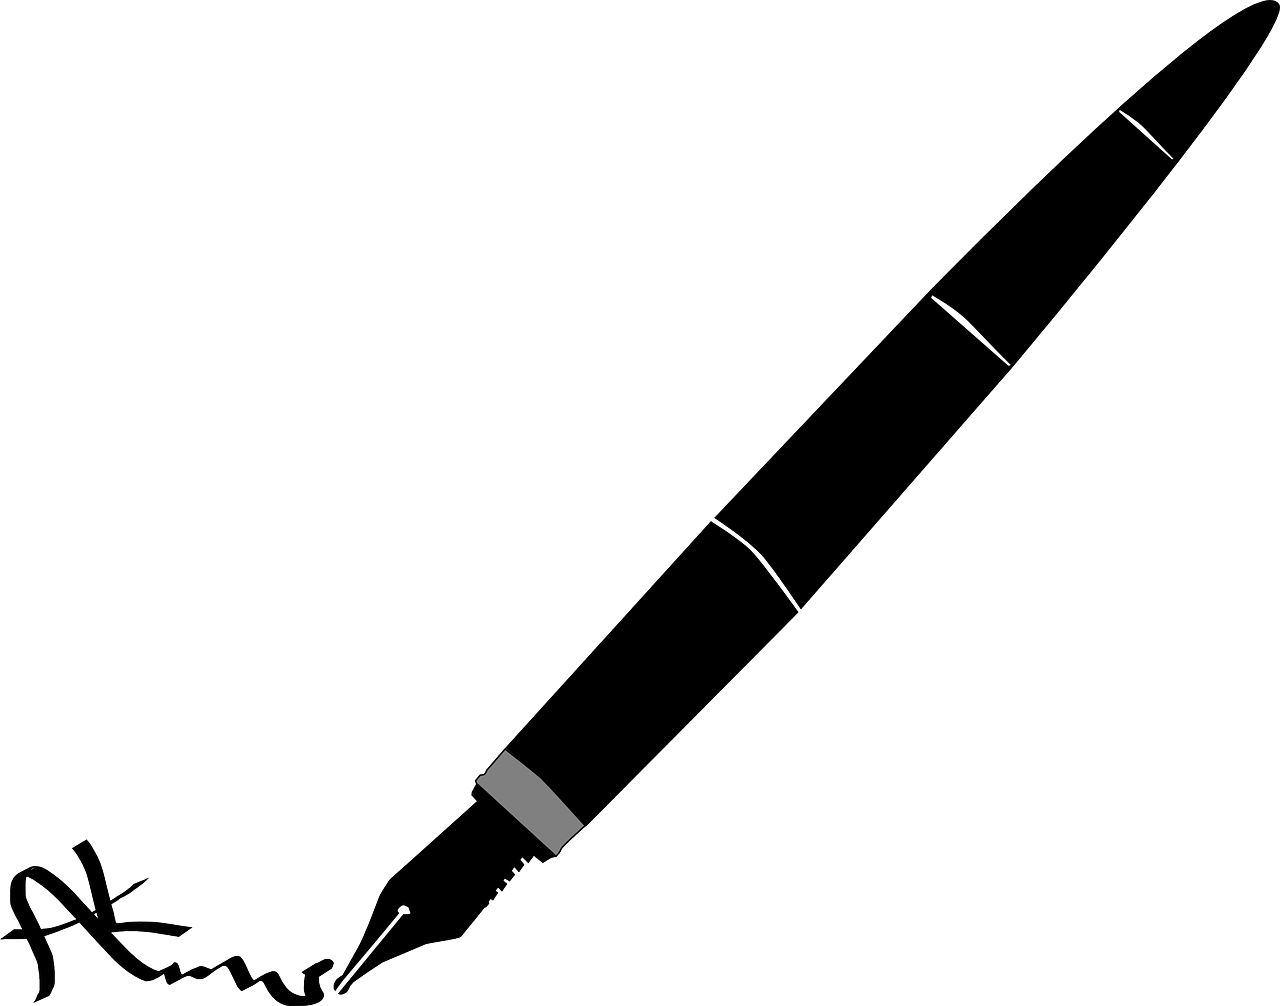 a black and white drawing of a pen, lineart, inspired by Slava Raškaj, reddit, minimalism, black backround. inkscape, in orbit, ms paint, nighttime